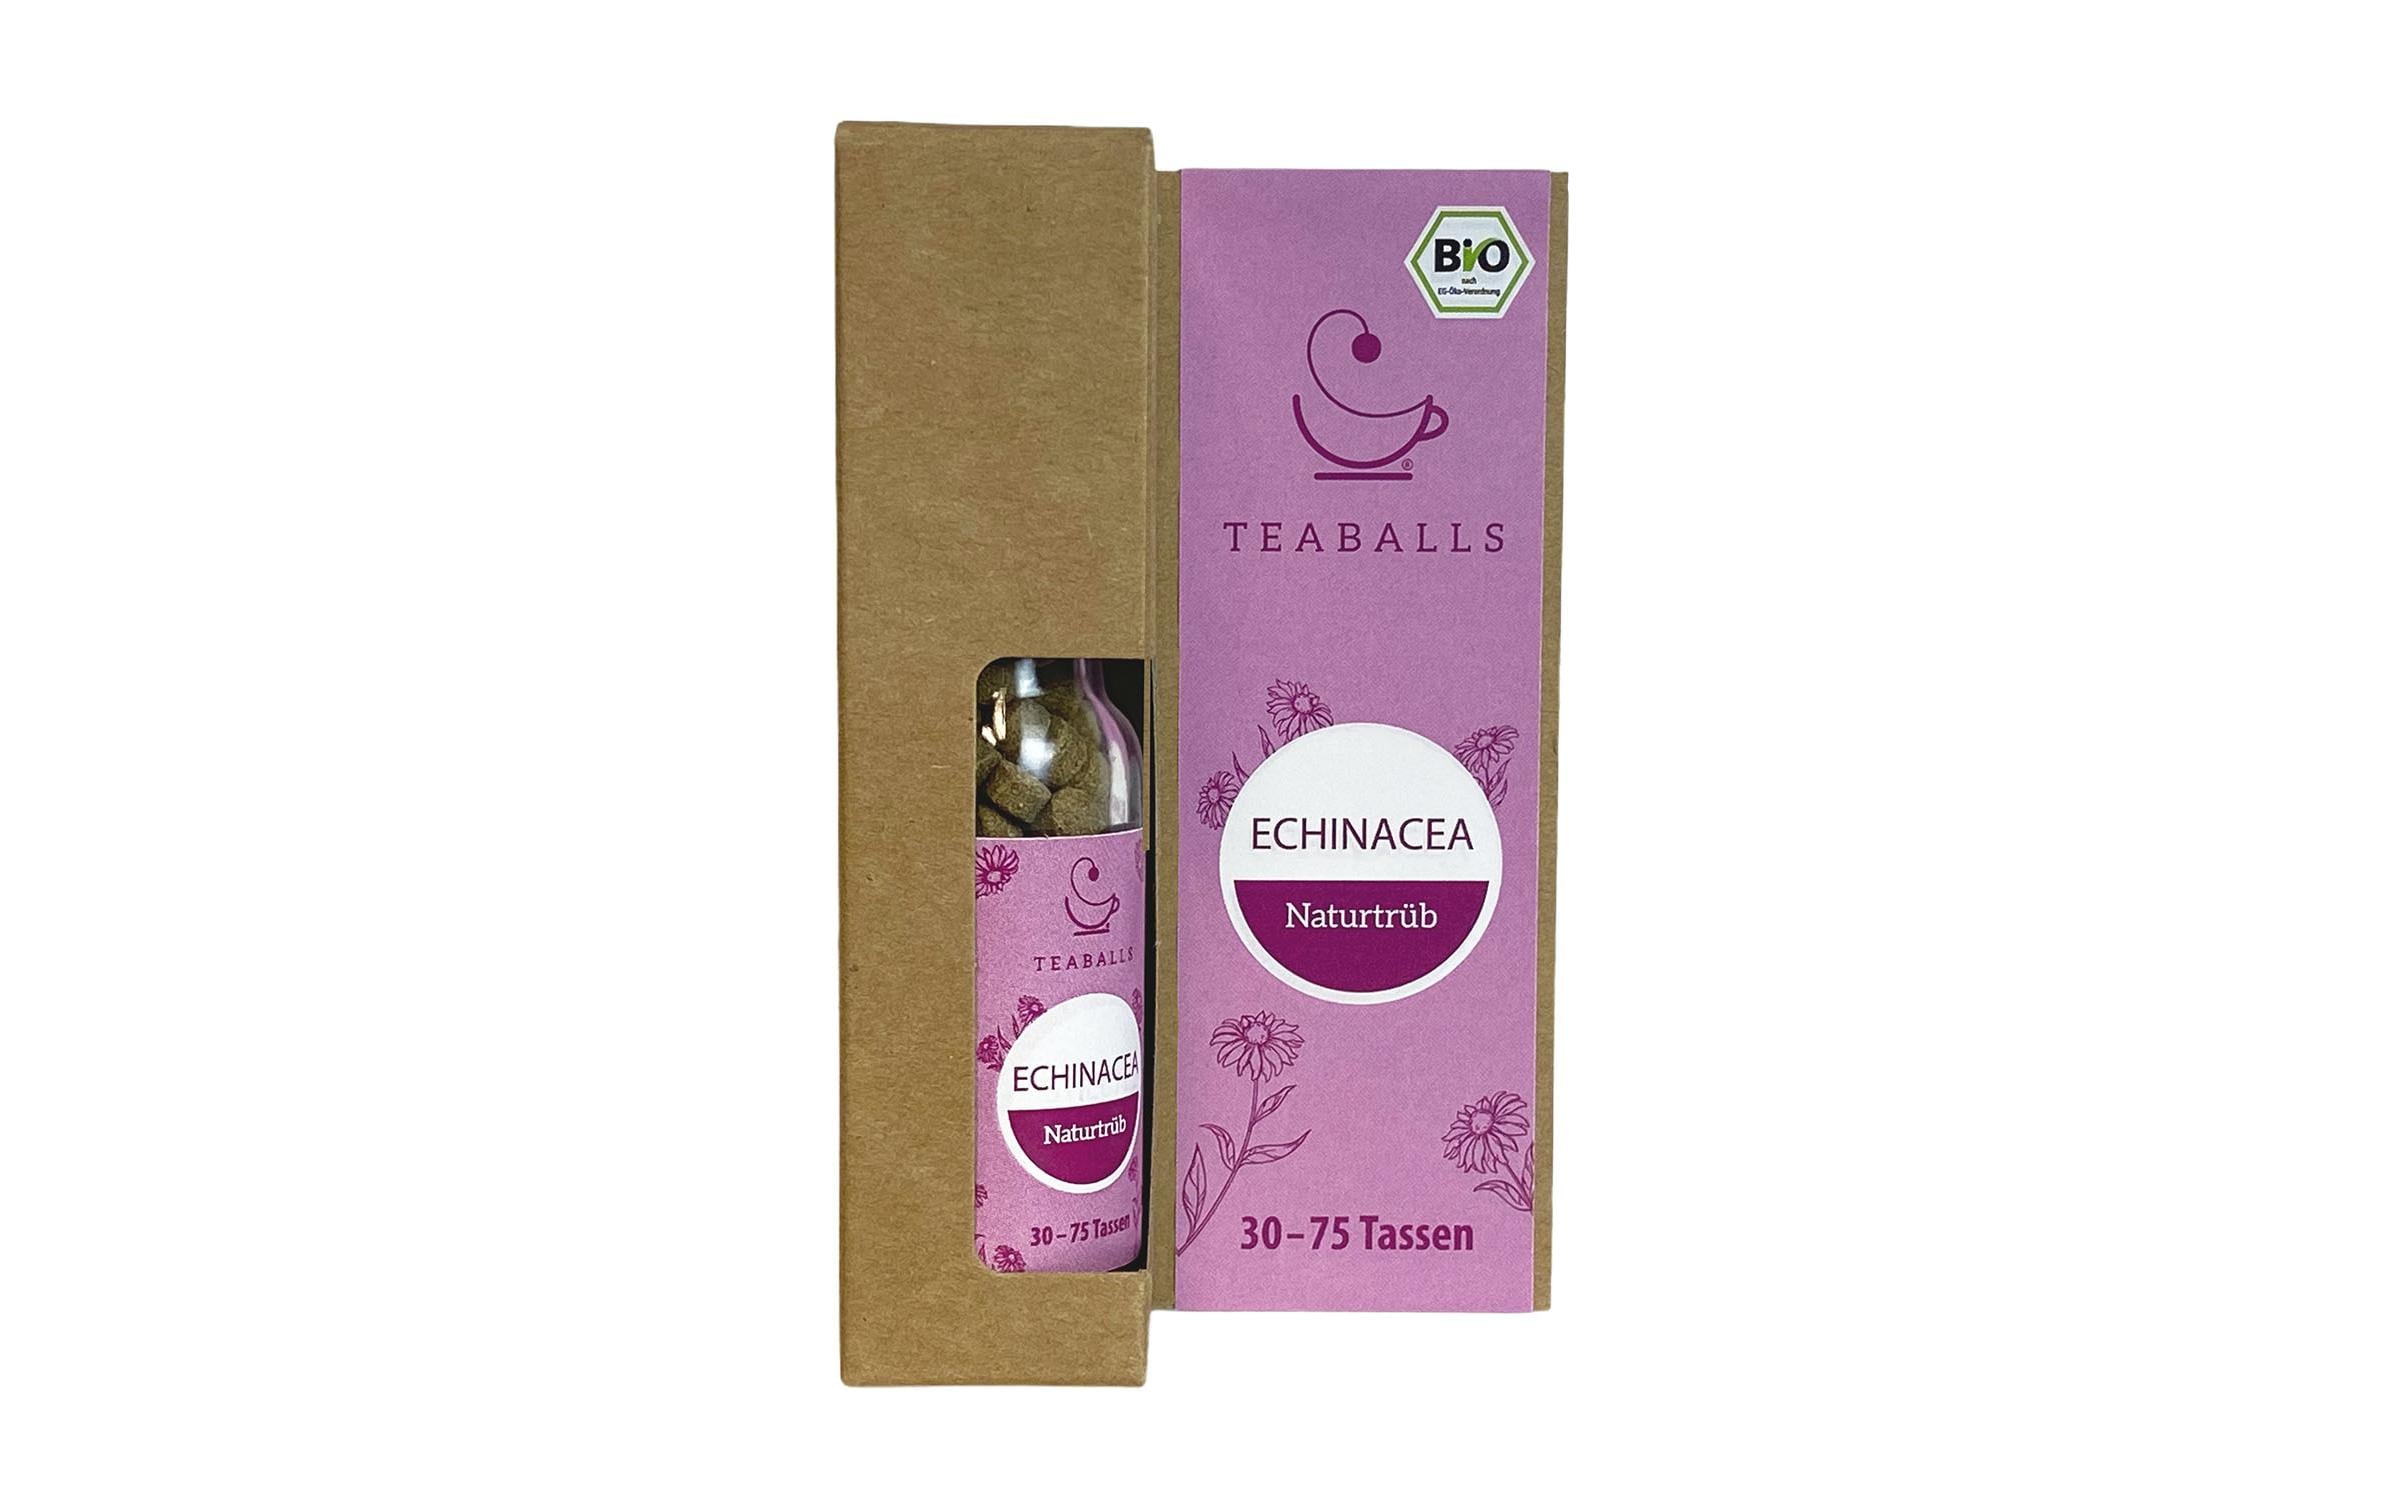 TEABALLS Teaballs Echinacea Bio naturtrüb 30-75 Tassen